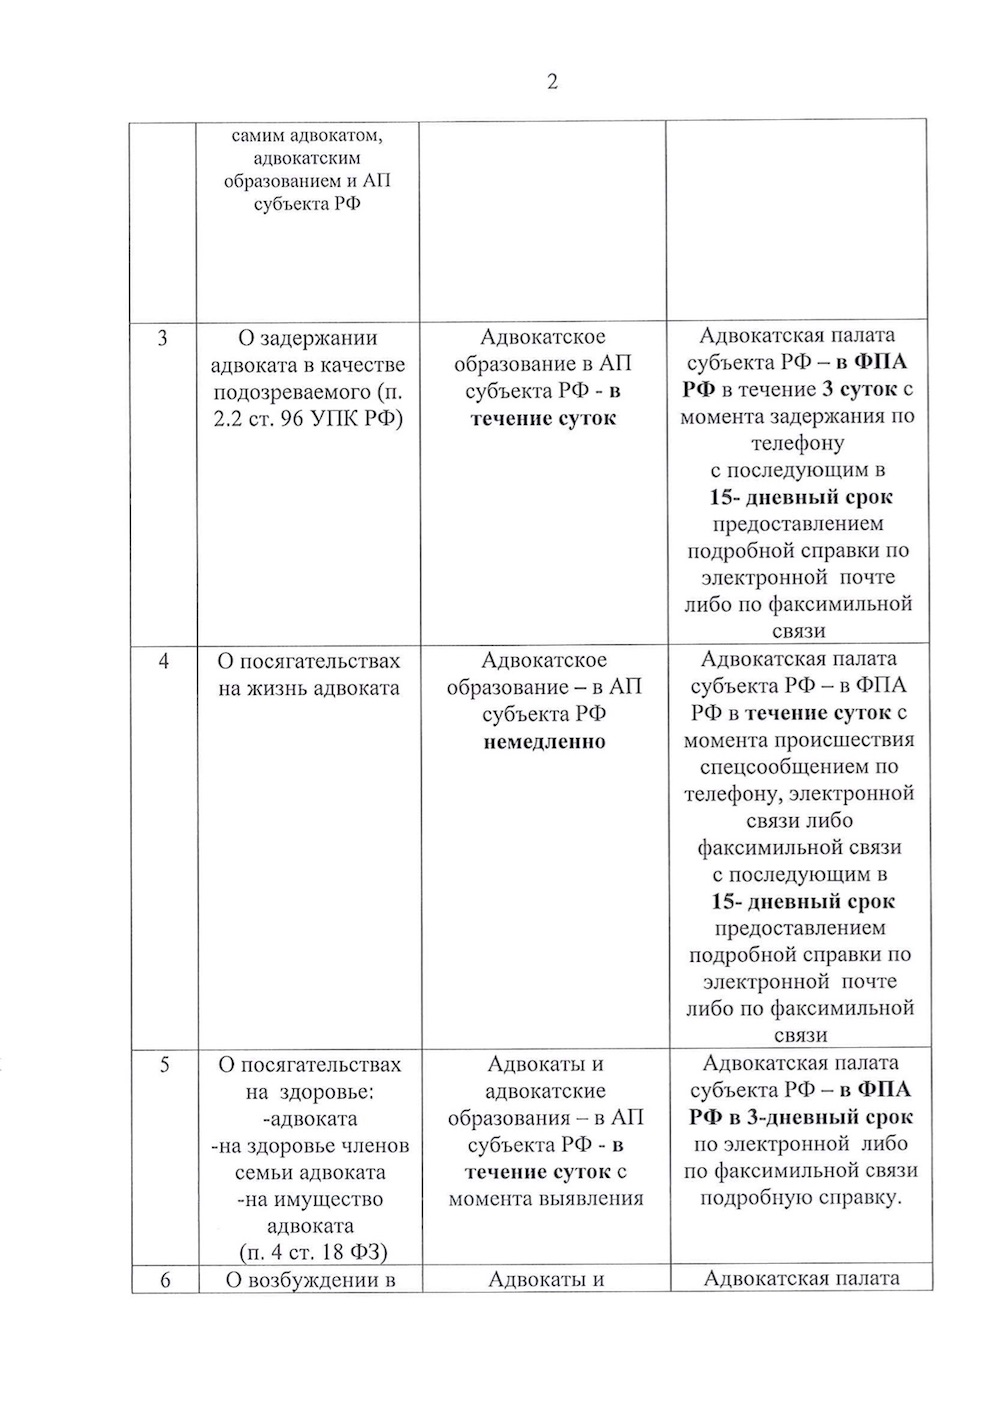 Советом ФПА утвержден перечень сведений, подлежащих представлению в Адвокатскую Палату субъекта РФ и ФПА РФ